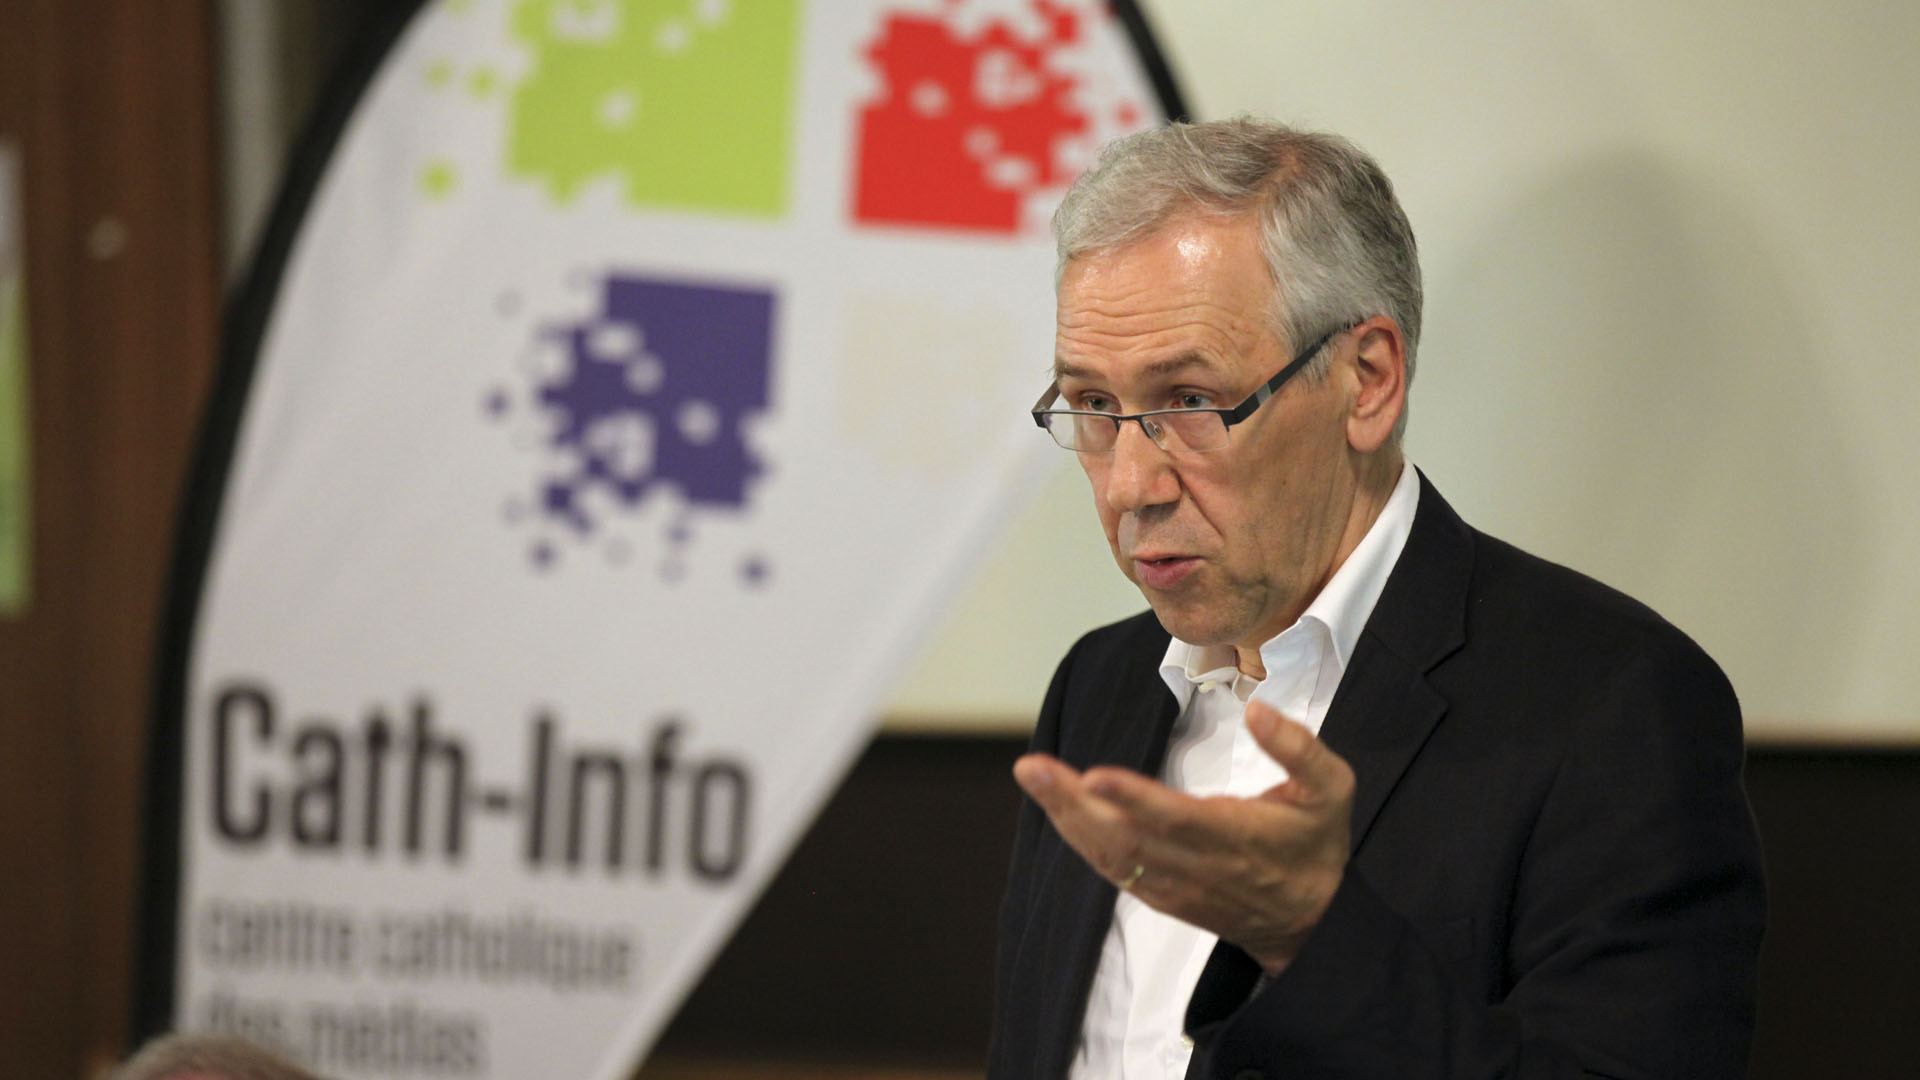 Bernard Litzler, directeur de Cath-Info (Photo: Bernard Hallet)